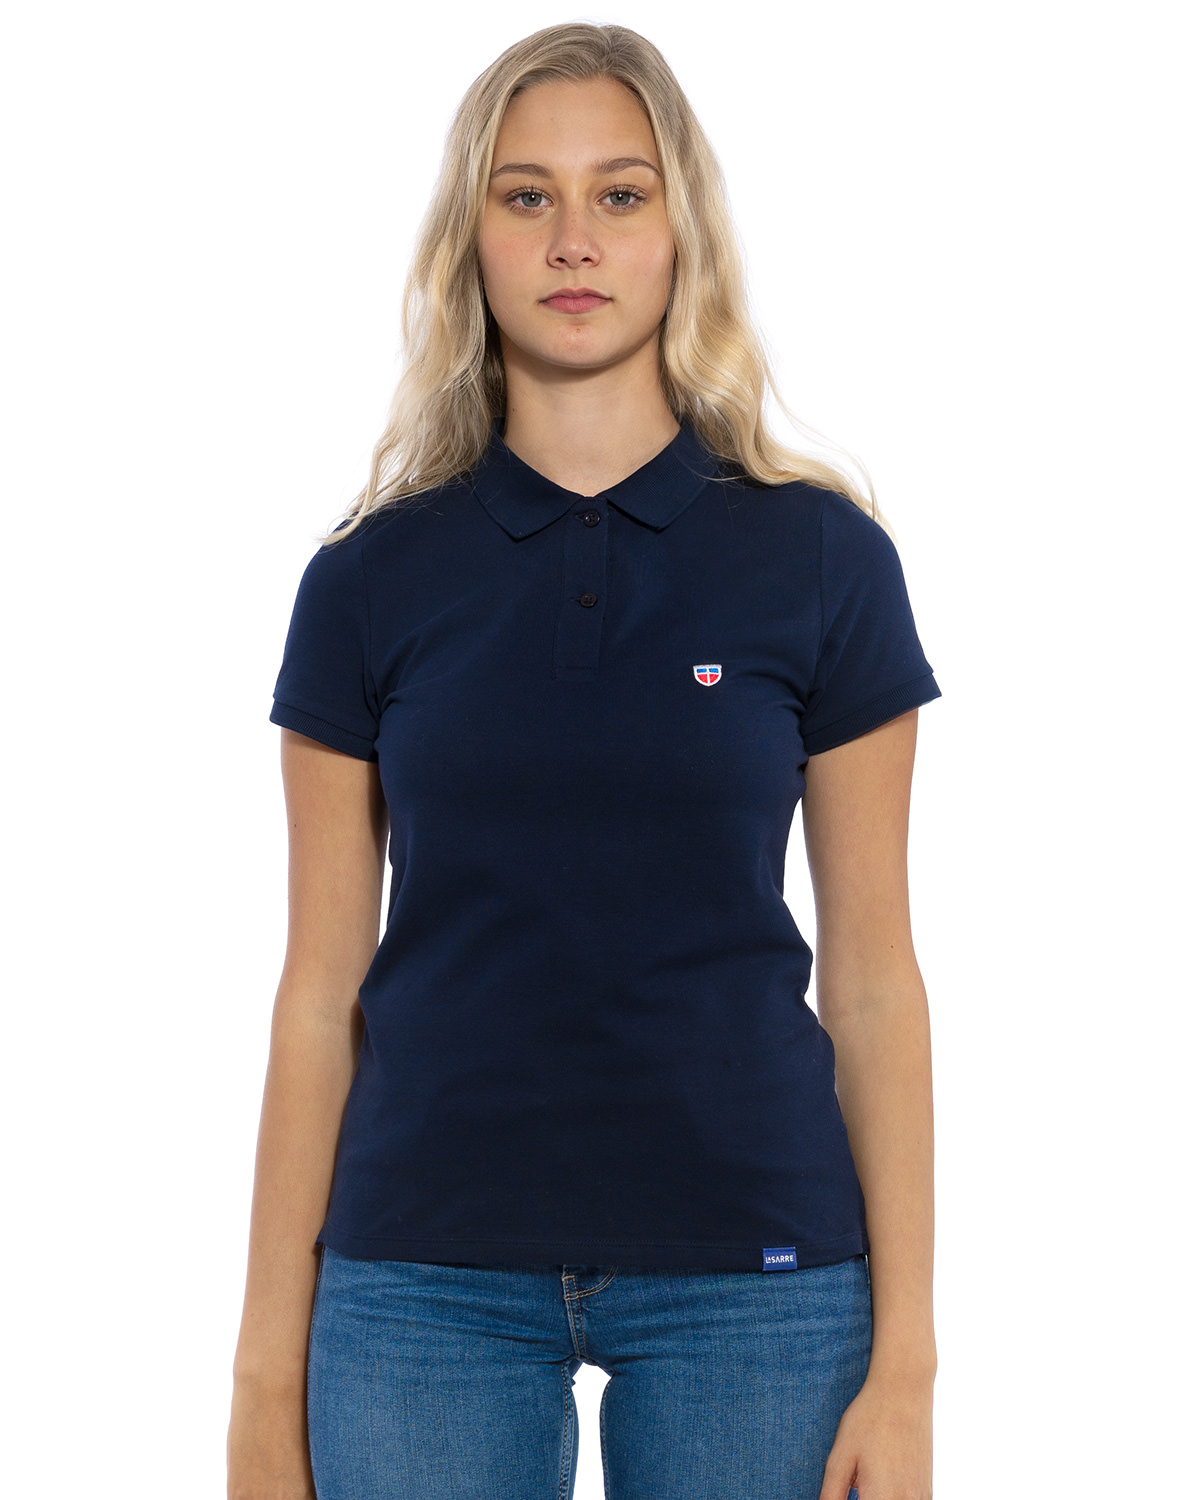 Vorder-Ansicht des hochwertig bestickten LASARRE Polo Shirt für Frauen in der Farbe Navy-Blau von der Saarland Marke Lasarre mit LASARRE Wappen in Blau, Weiß, Rot auf der linken Brust und dem blauem LASARRE Markenzeichen am Saum